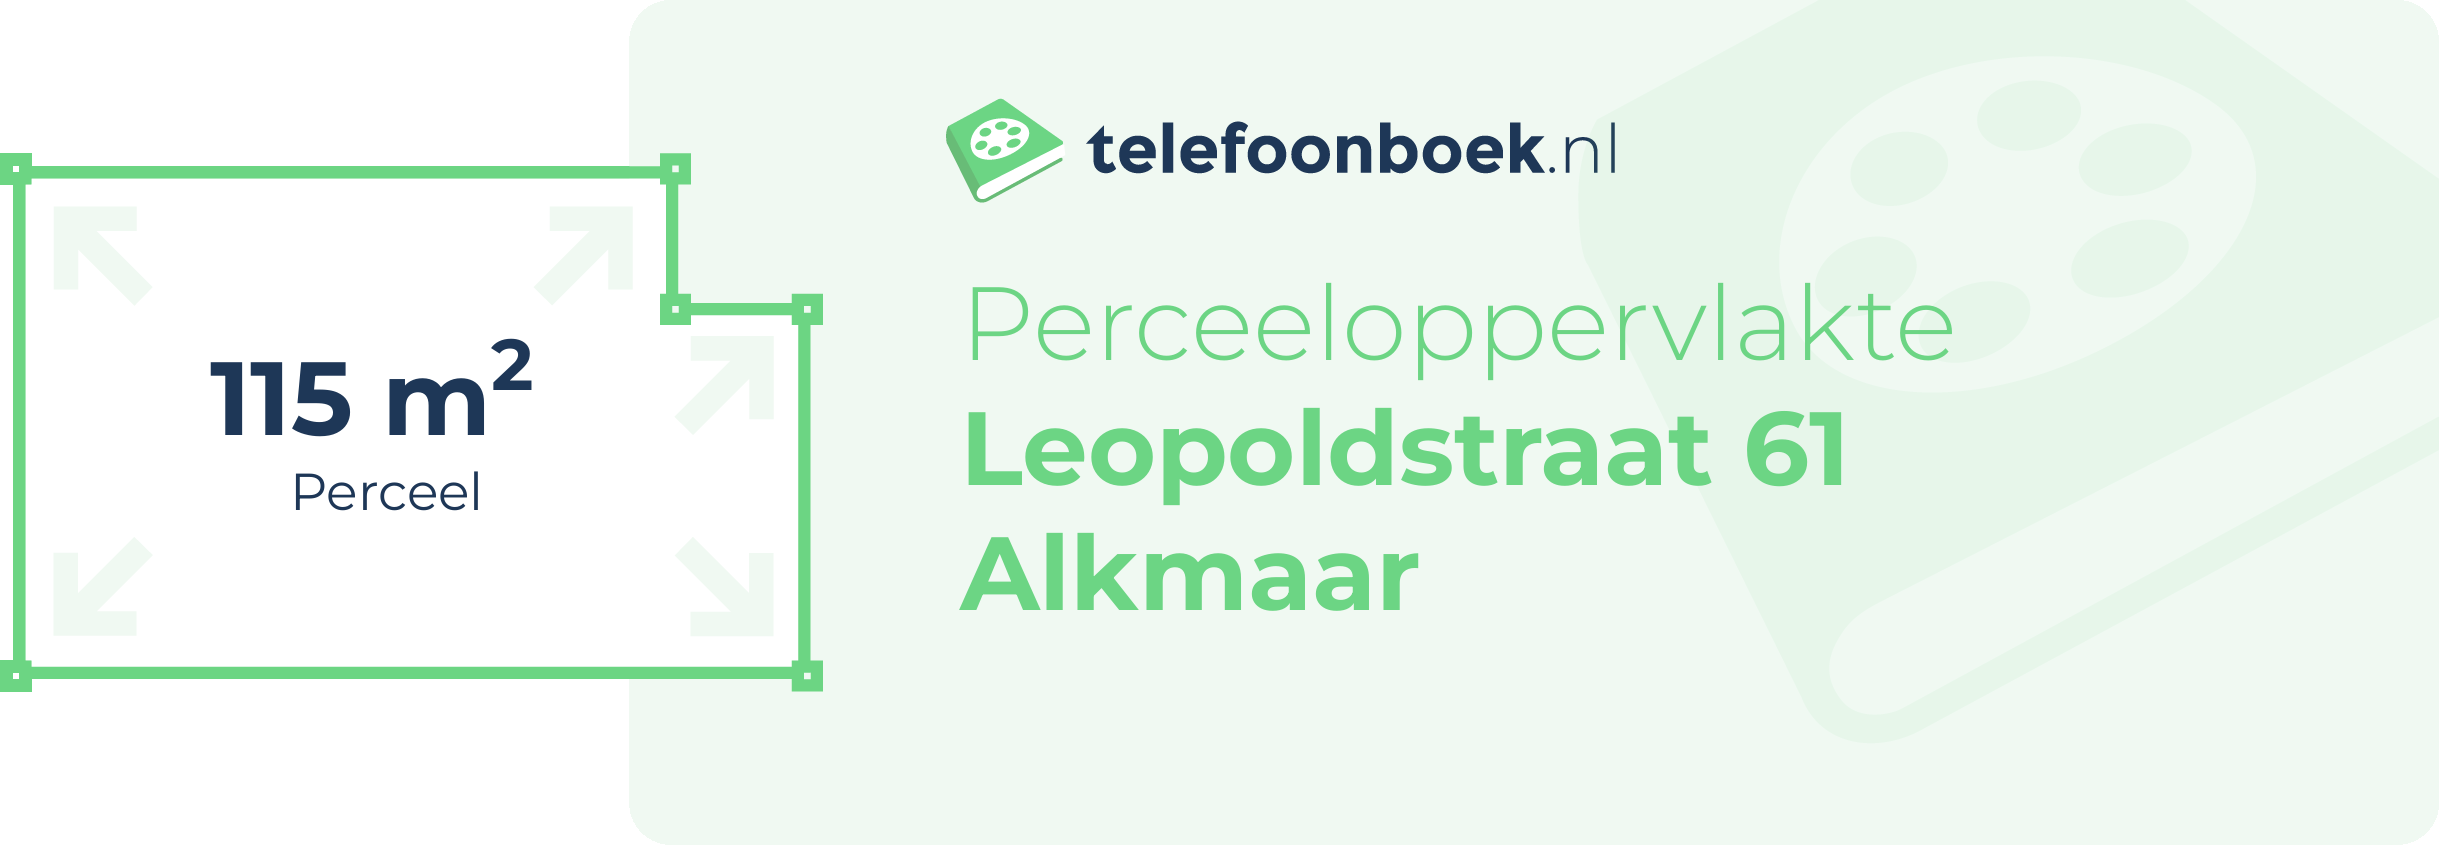 Perceeloppervlakte Leopoldstraat 61 Alkmaar